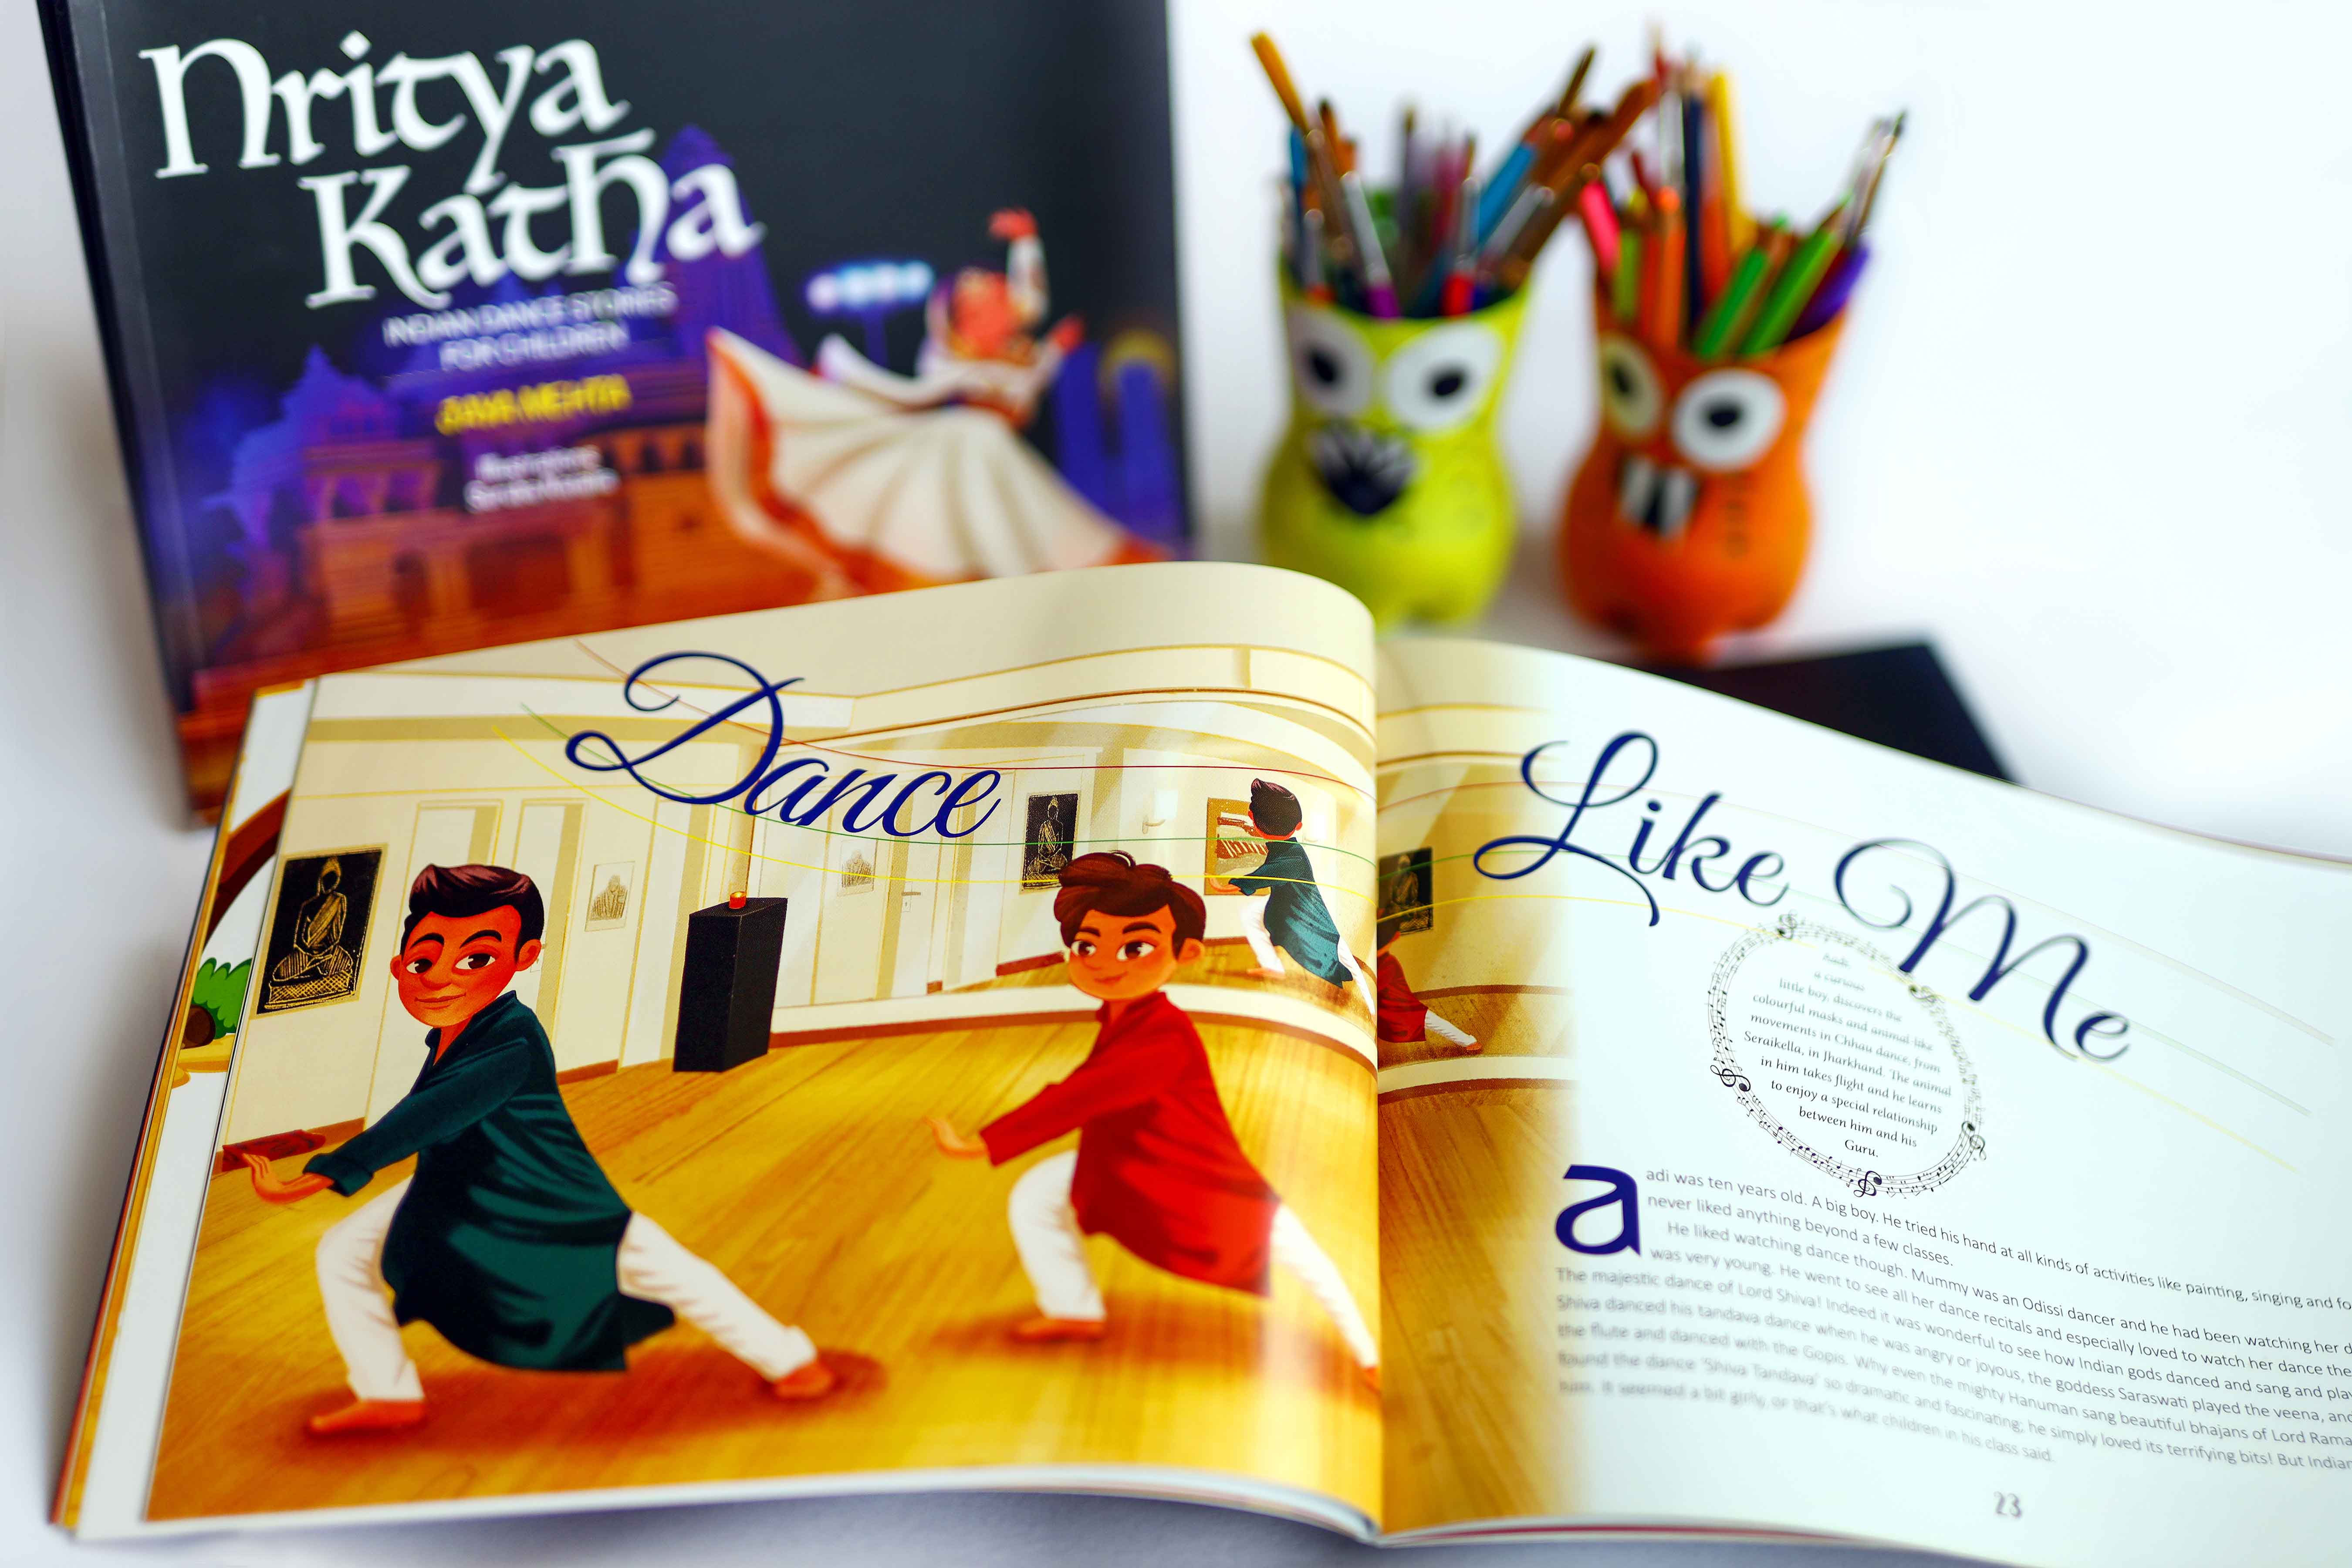 Nritya Katha - Dance stories for children